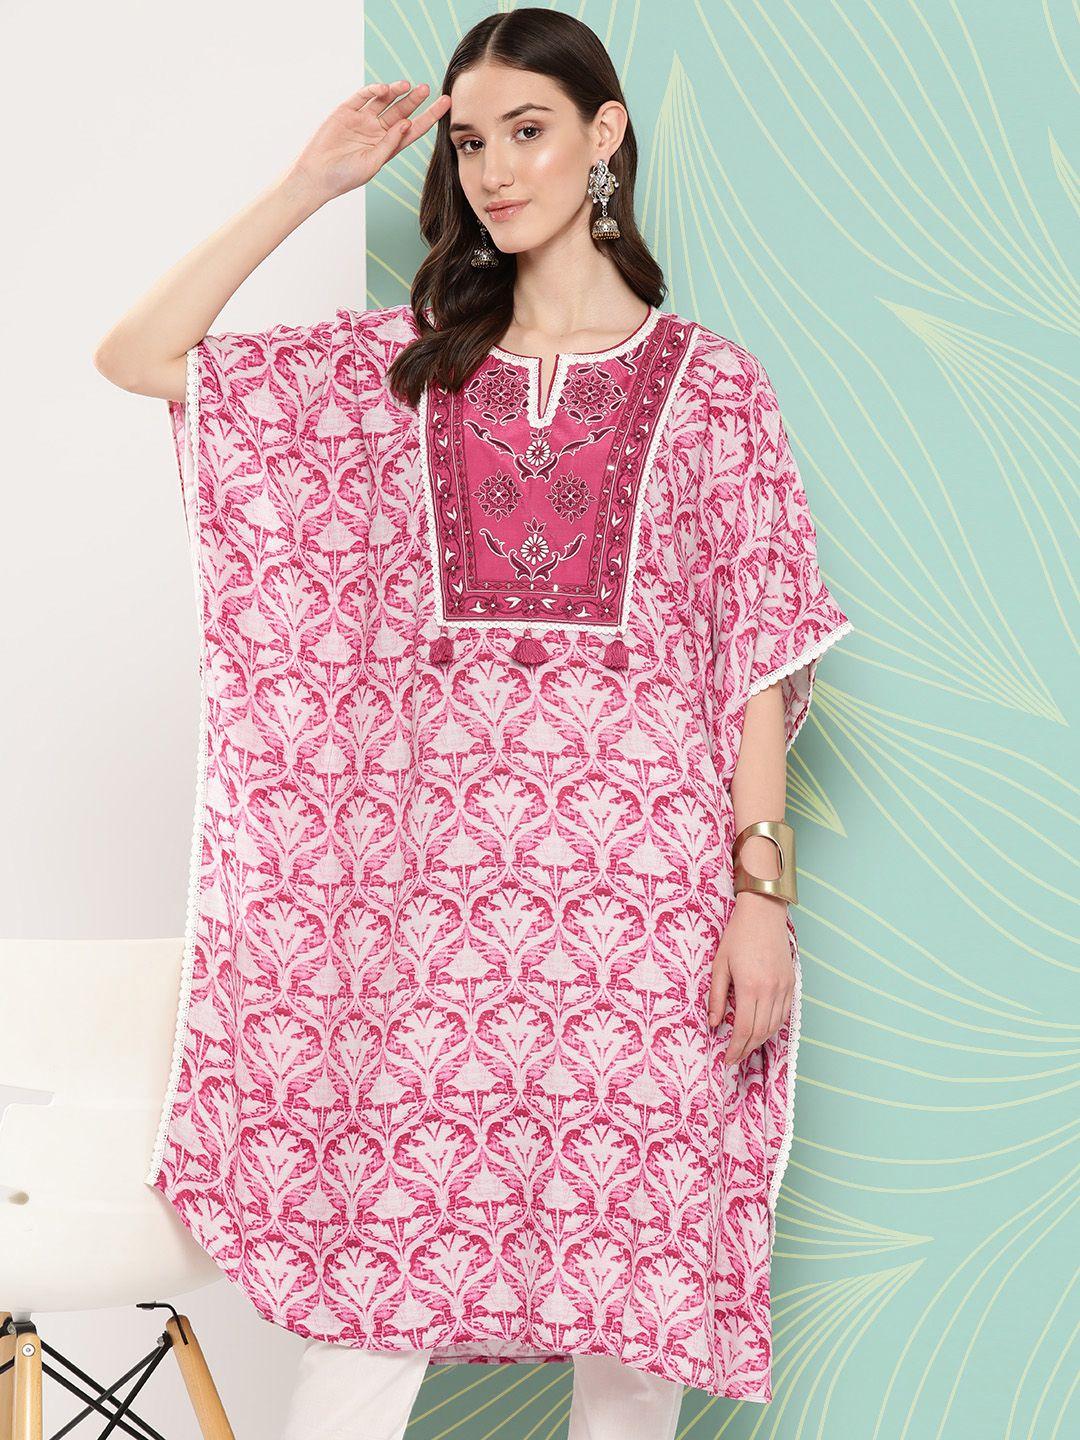 nayam by lakshita floral embroidered flared sleeves laced kaftan kurta